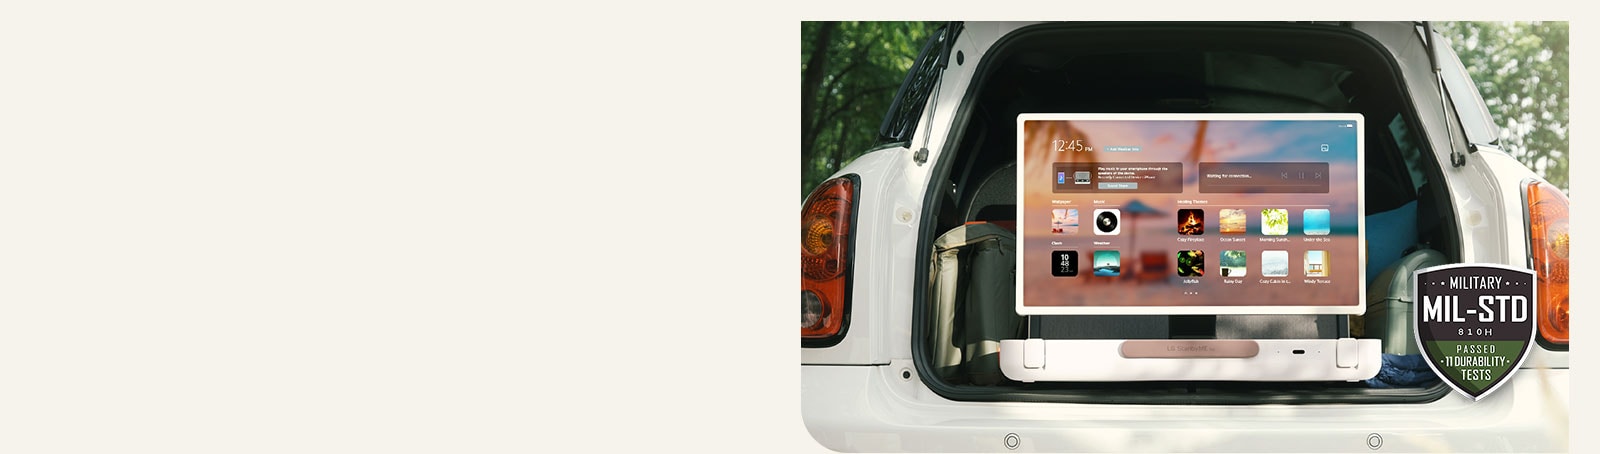 Mặt trước của LG StanbyME Go. Sản phẩm được đặt trên ô tô, màn hình xoay ngang hiển thị màn hình chính. Ở phía dưới bên trái của hình ảnh, biểu tượng thông số quân sự được hiển thị.